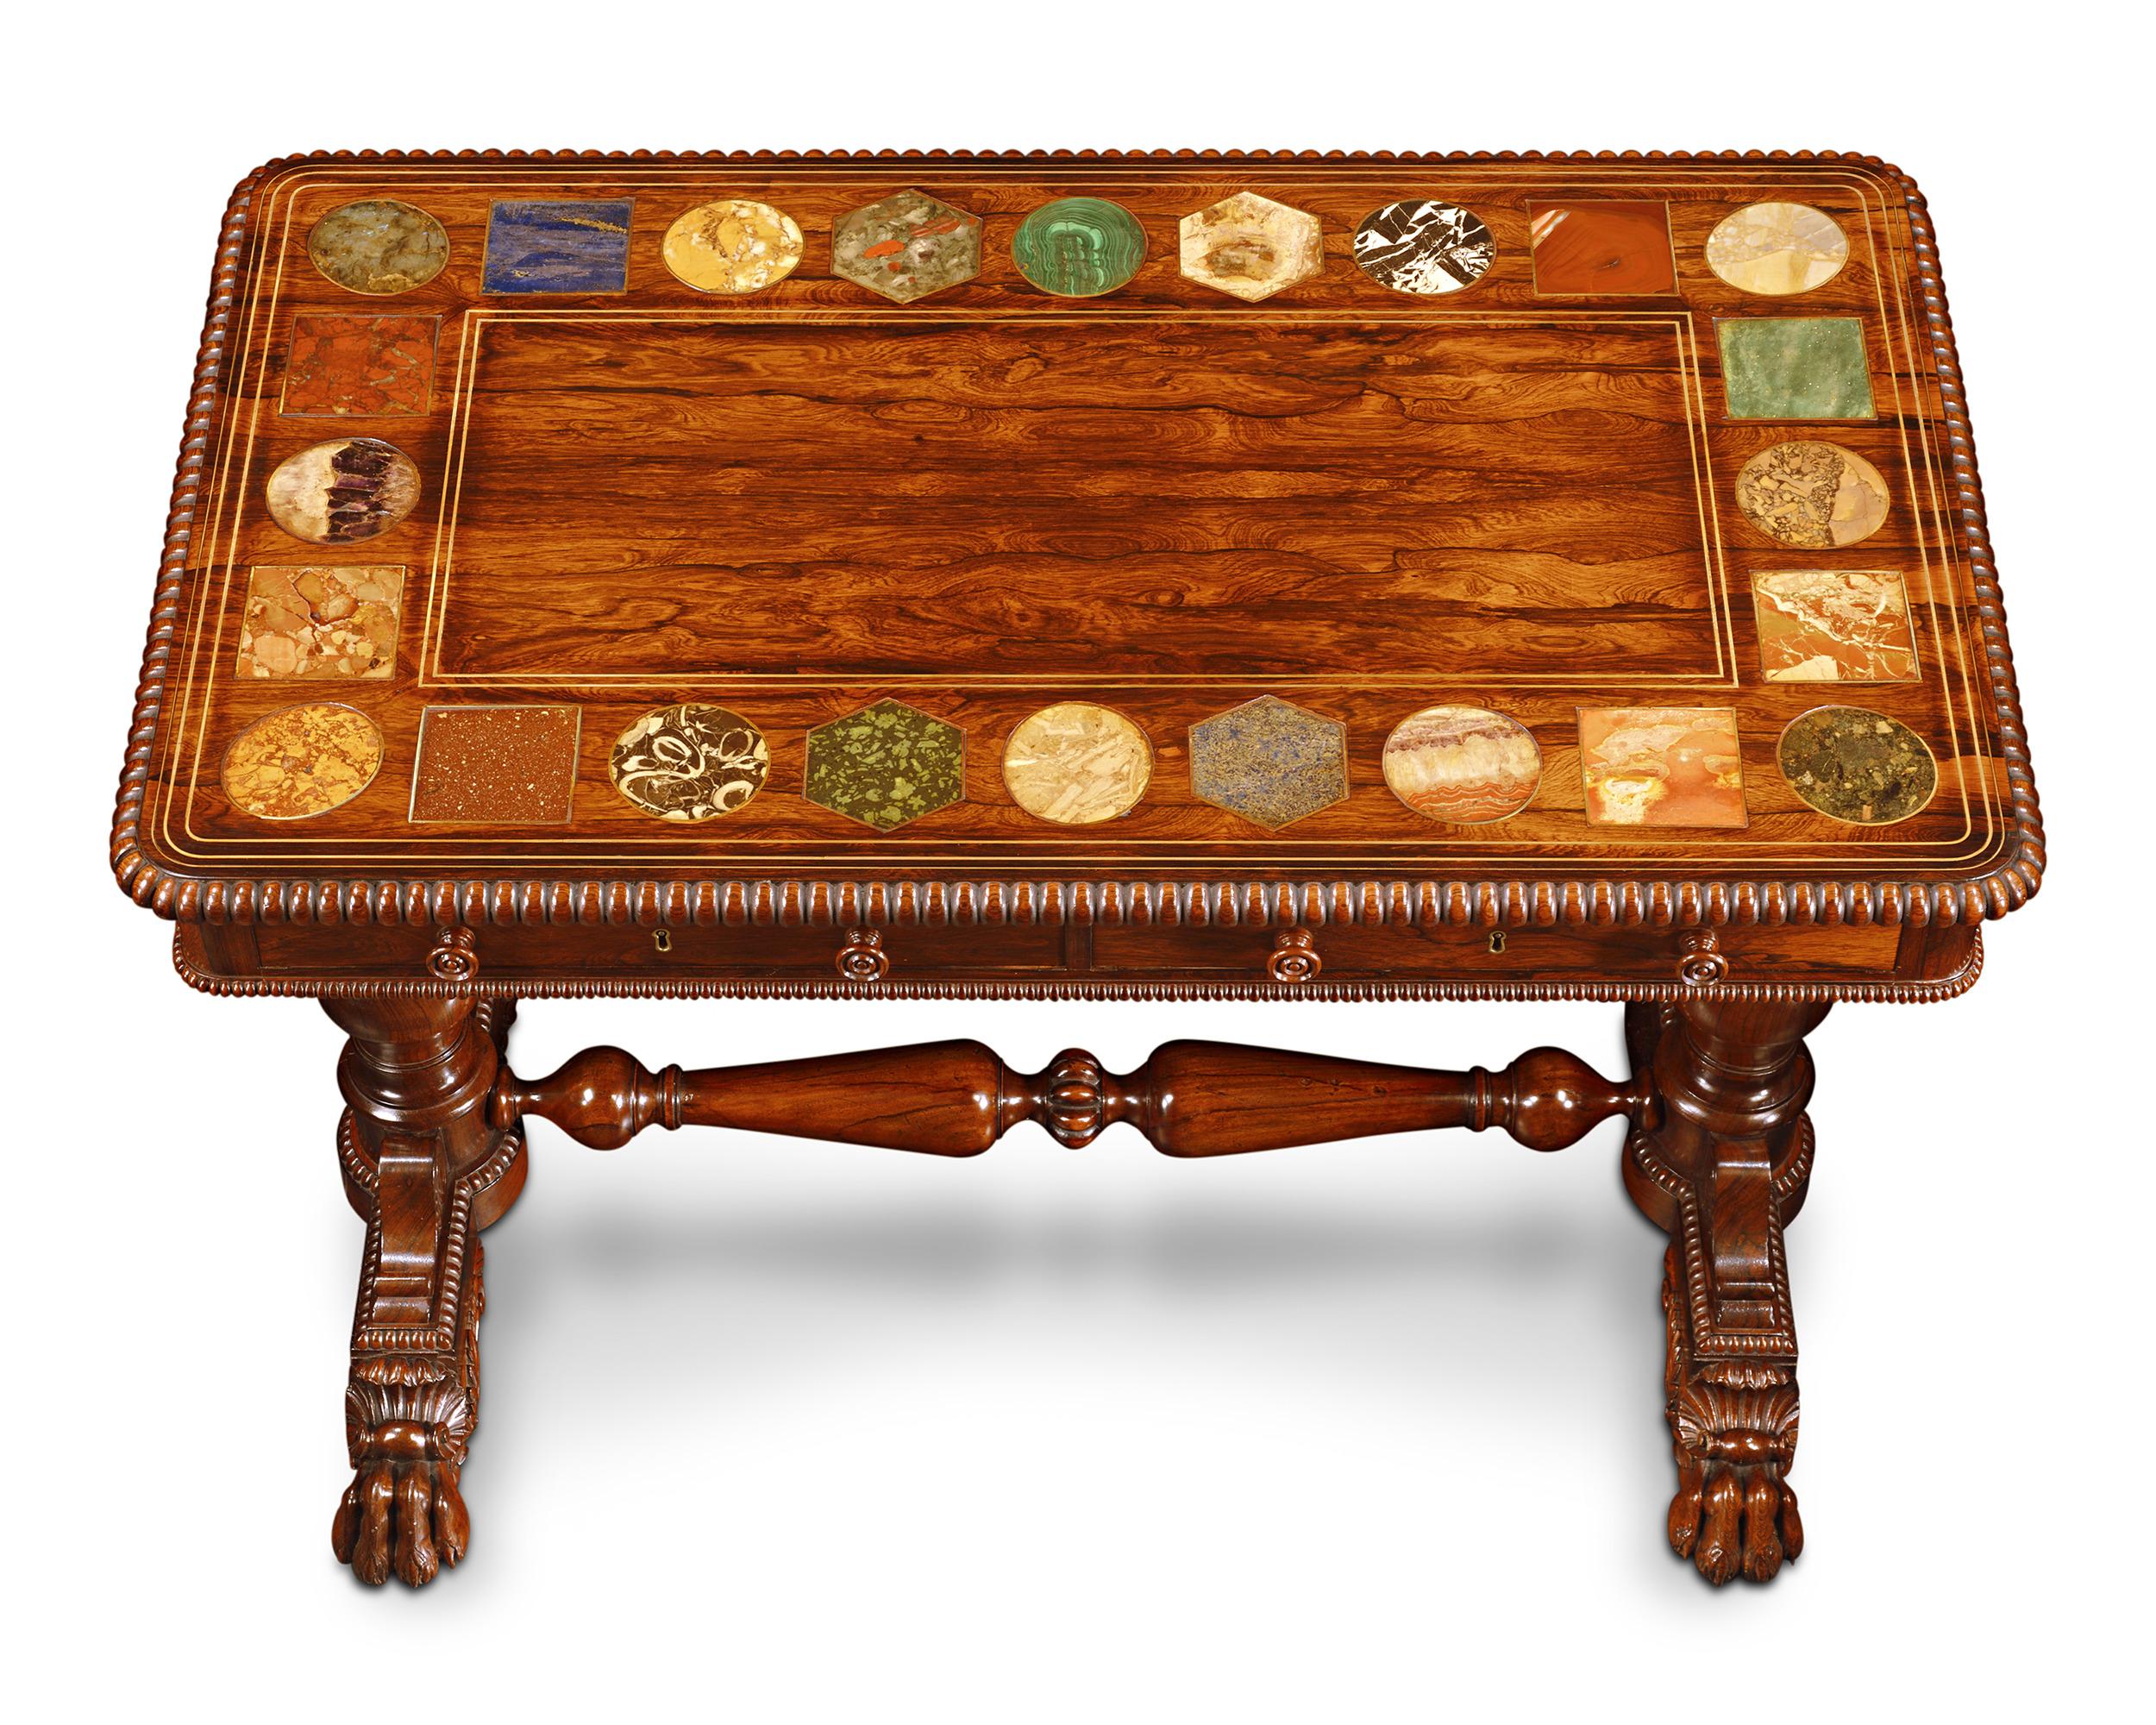 Cette remarquable table centrale en bois de rose, attribuée à la légendaire firme Gillows, met en valeur un artisanat de qualité et des spécimens de pierre dure d'une rareté étonnante. La base de la table est ornementée, avec des pieds en forme de